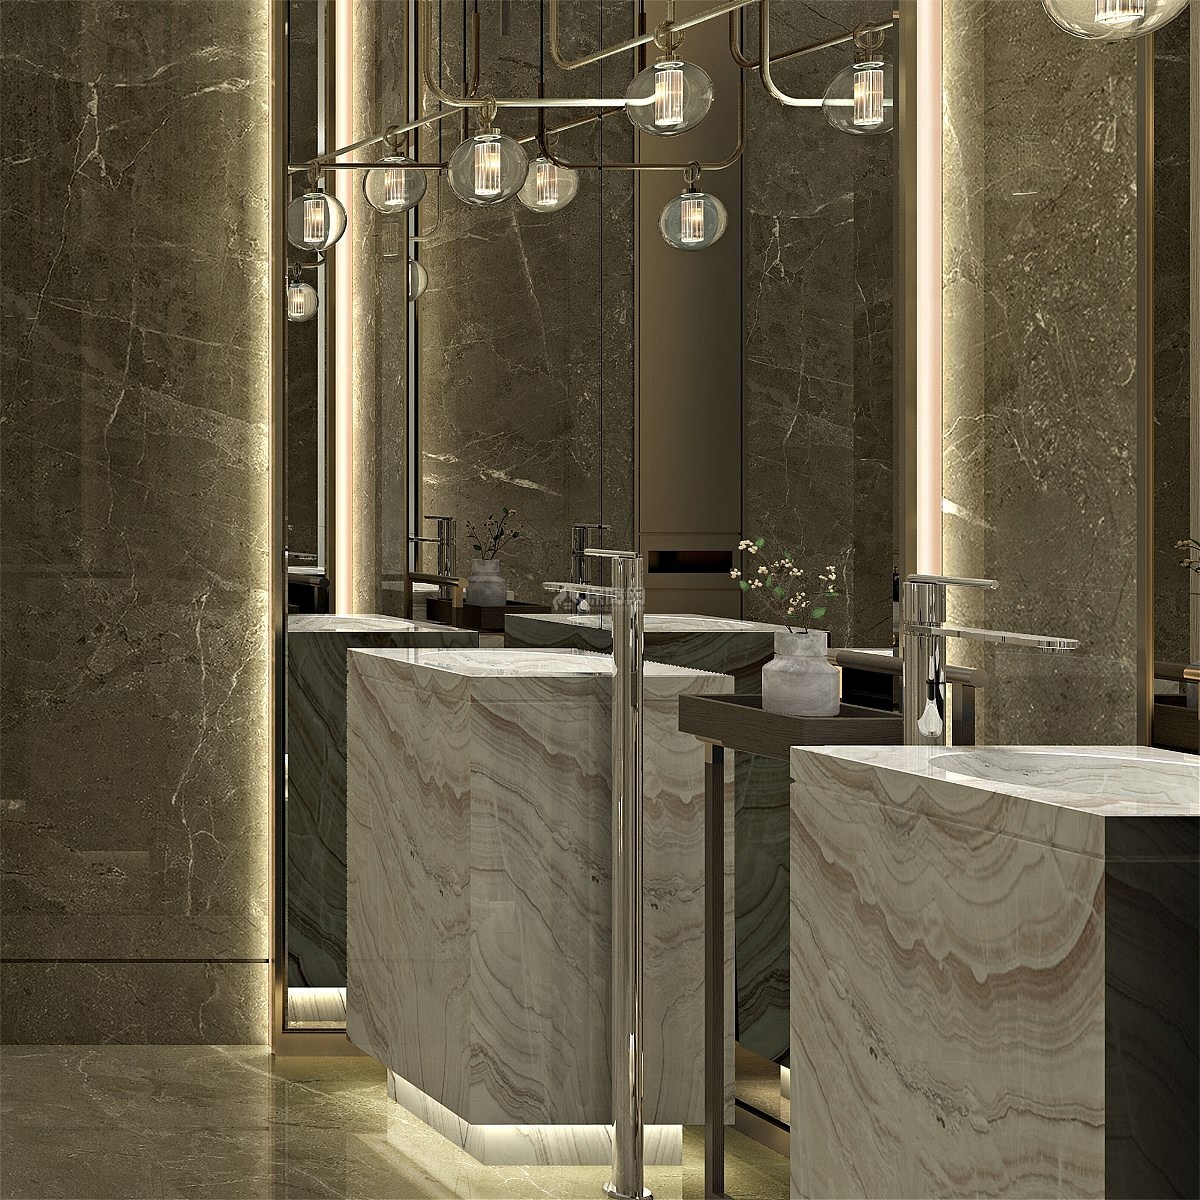 广州美爵酒店之公厕洗手台设计效果图